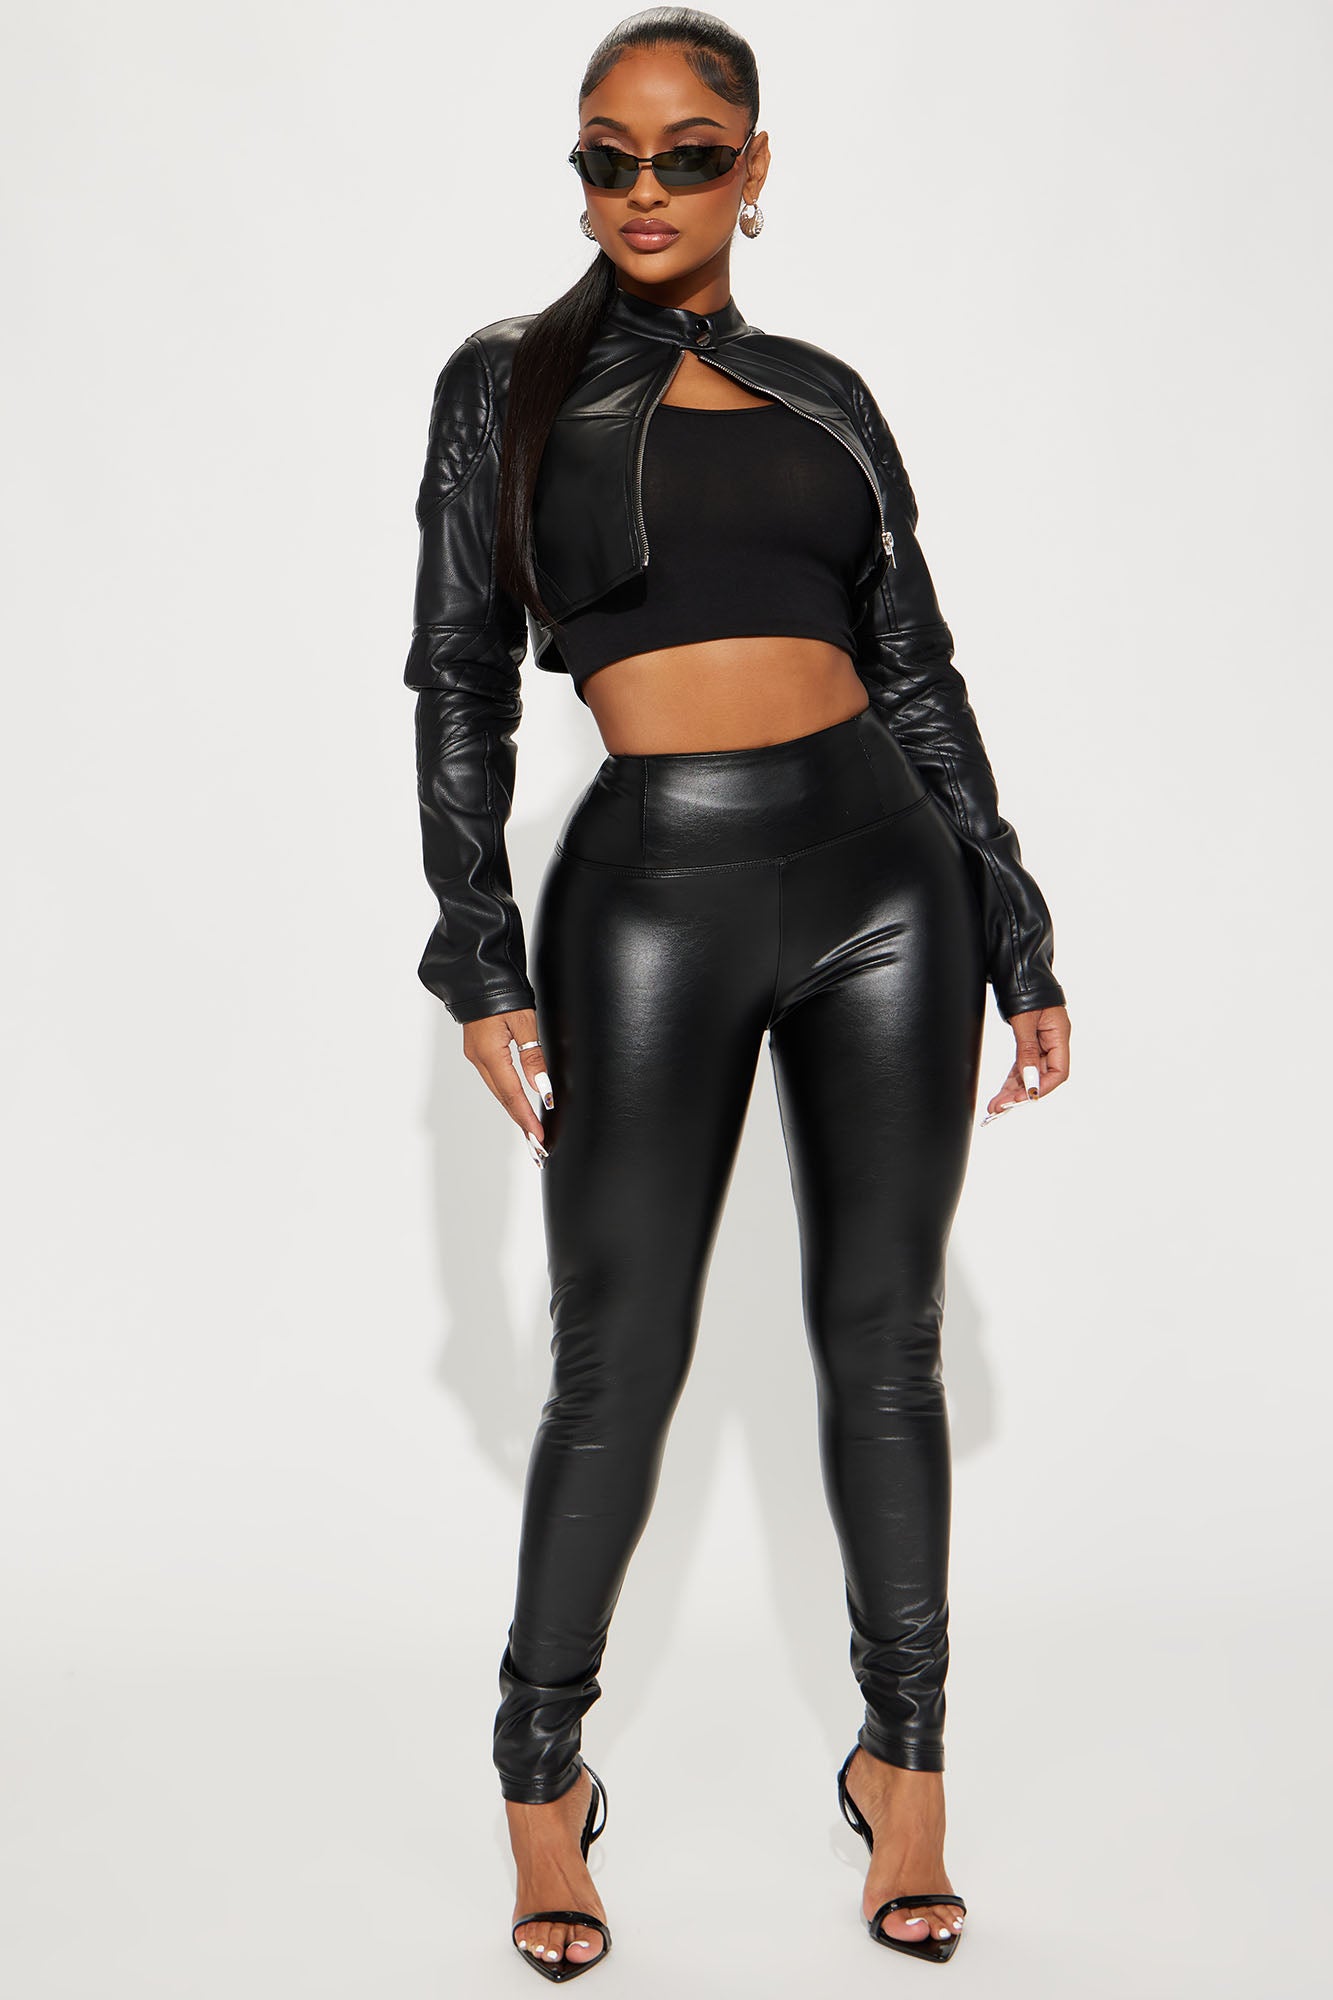 Girls Night Out Faux Leather Pants - Black, Fashion Nova, Pants